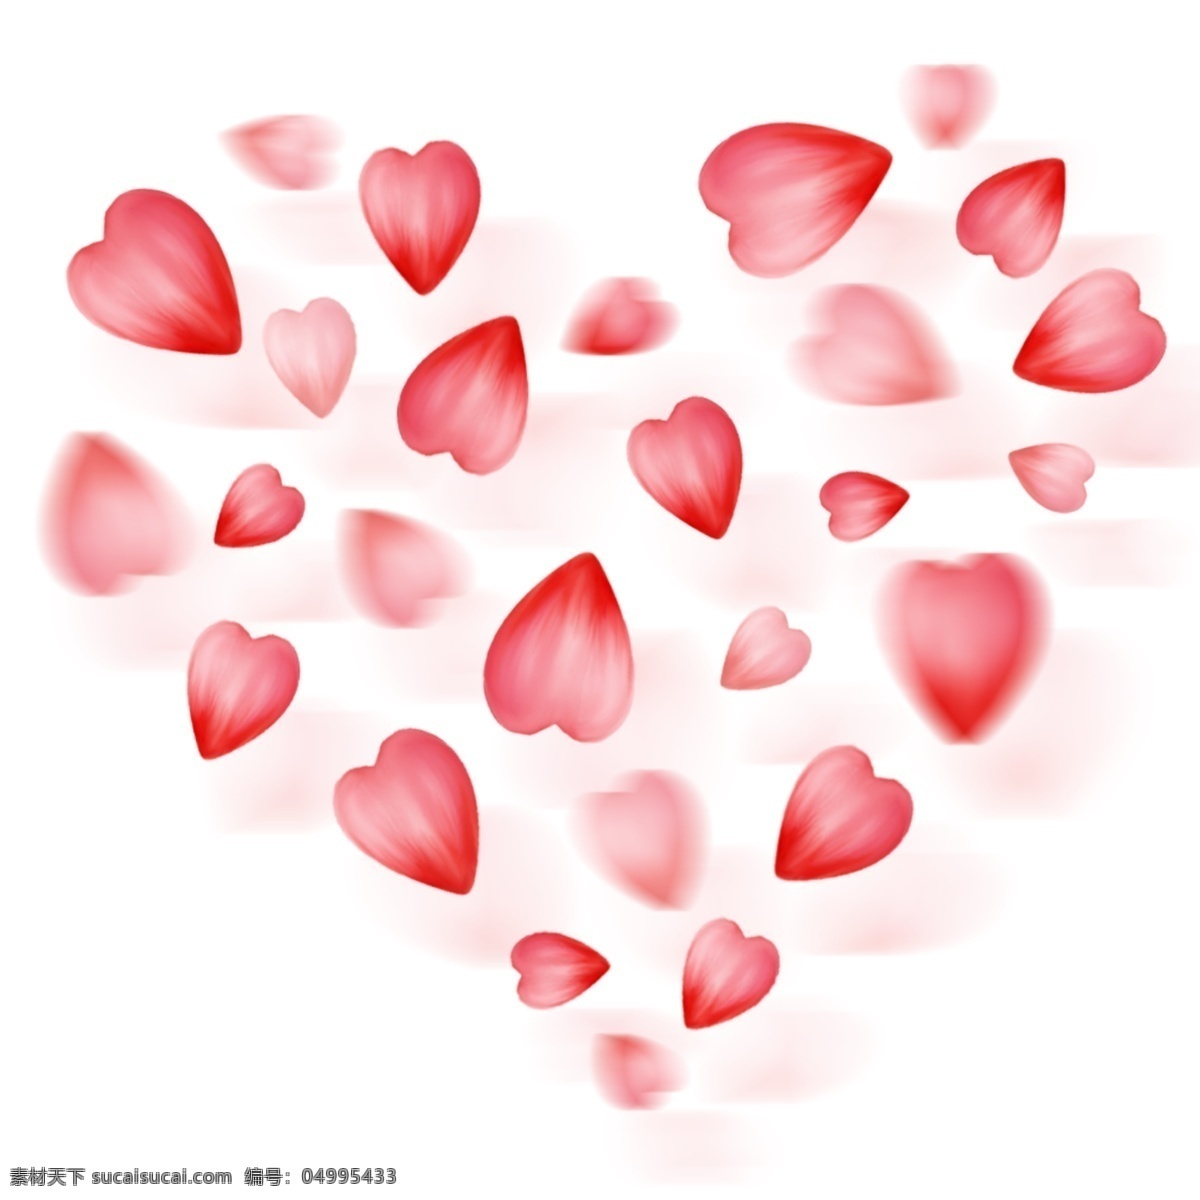 红色 爱心 玫瑰 漂浮 花瓣 装饰 元素 爱心图案 创意元素 漂浮花瓣 装饰元素 唯美浪漫 玫瑰花瓣